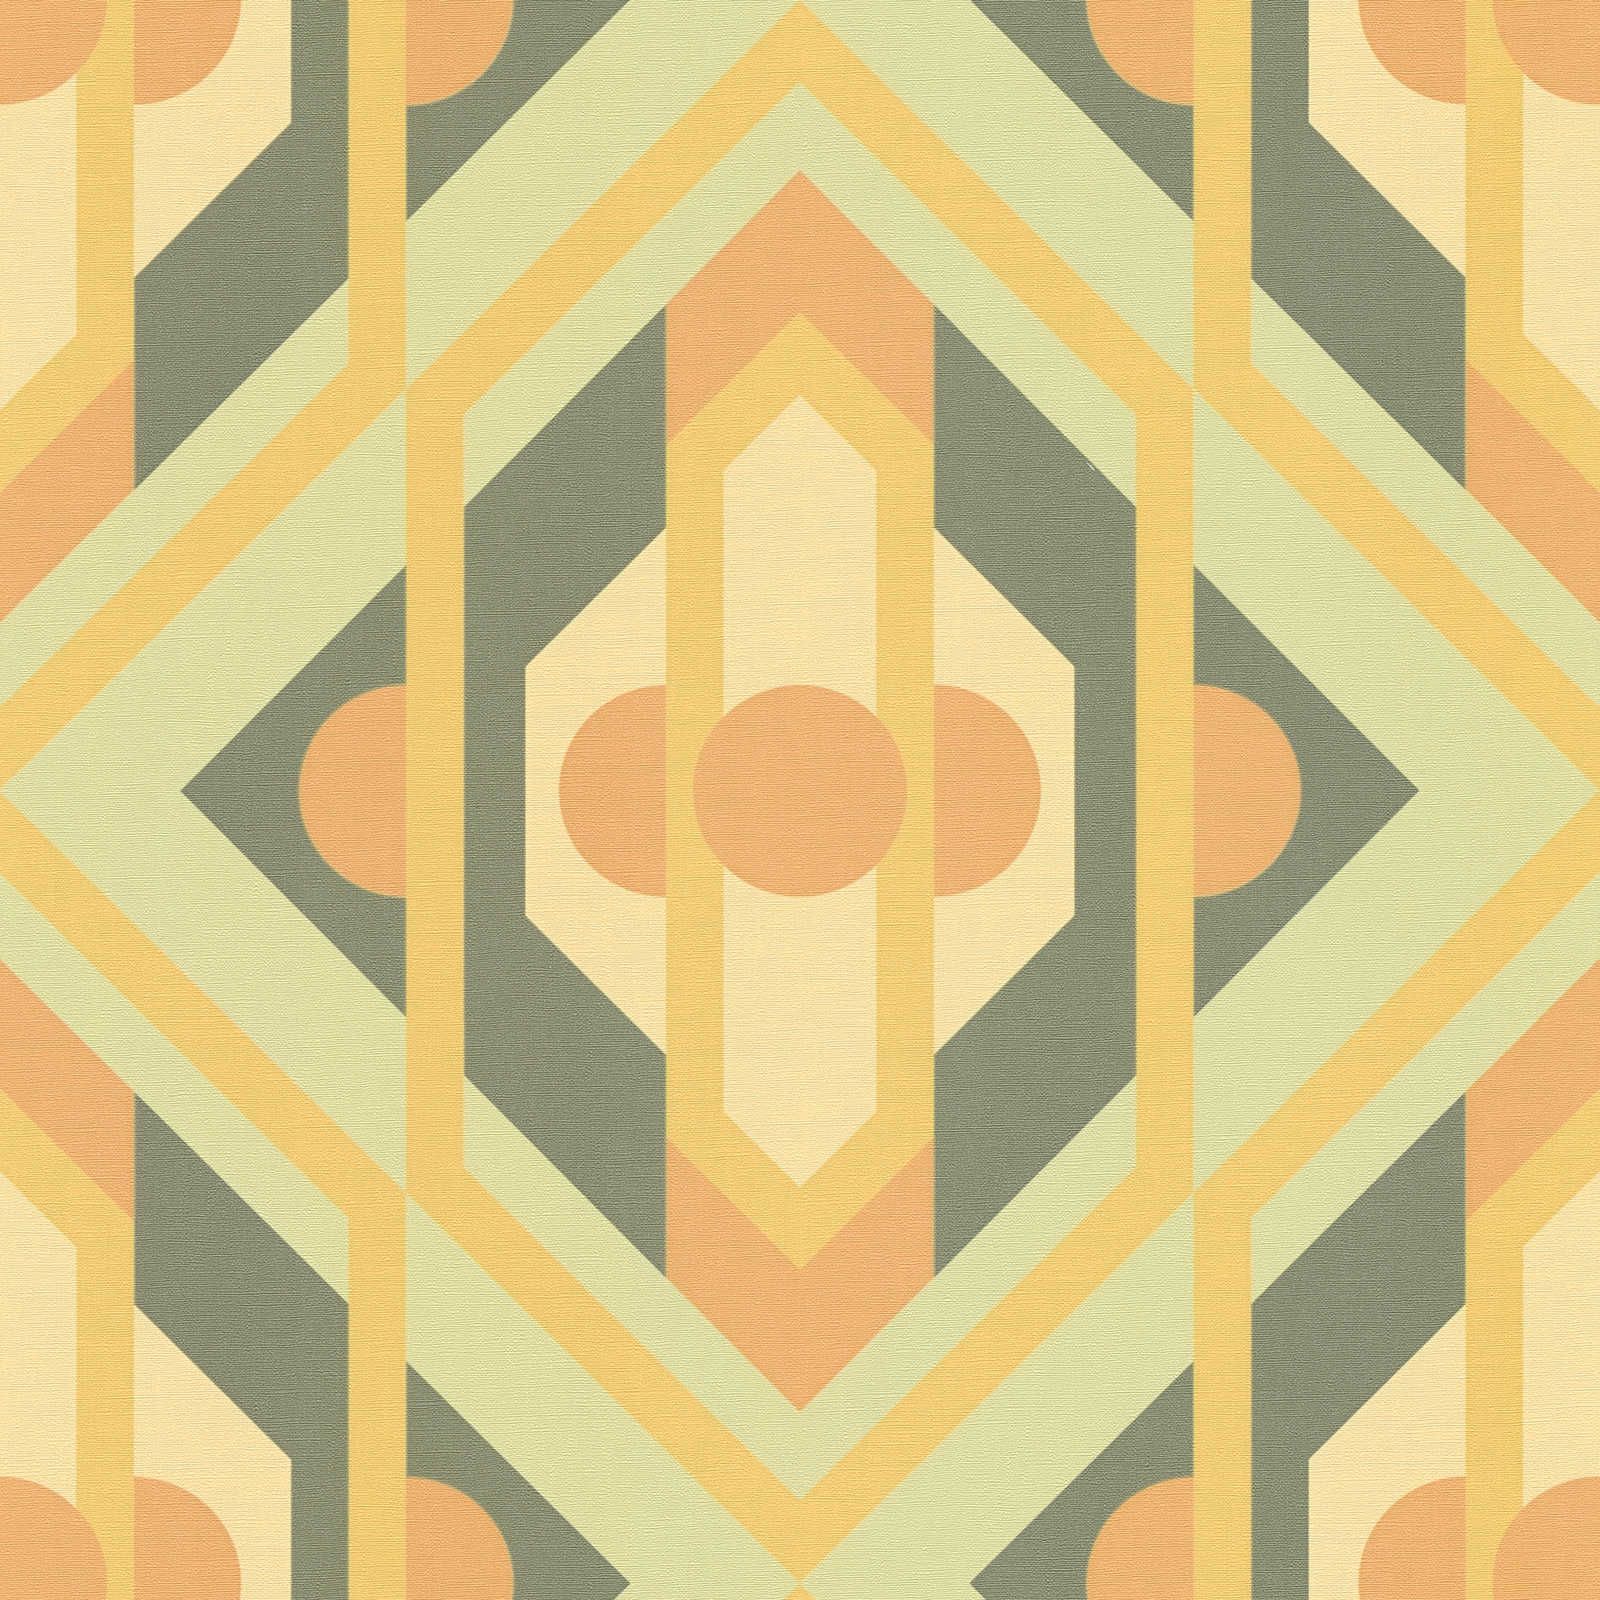         Geometric ornaments in retro style on non-woven wallpaper - green, yellow, orange
    